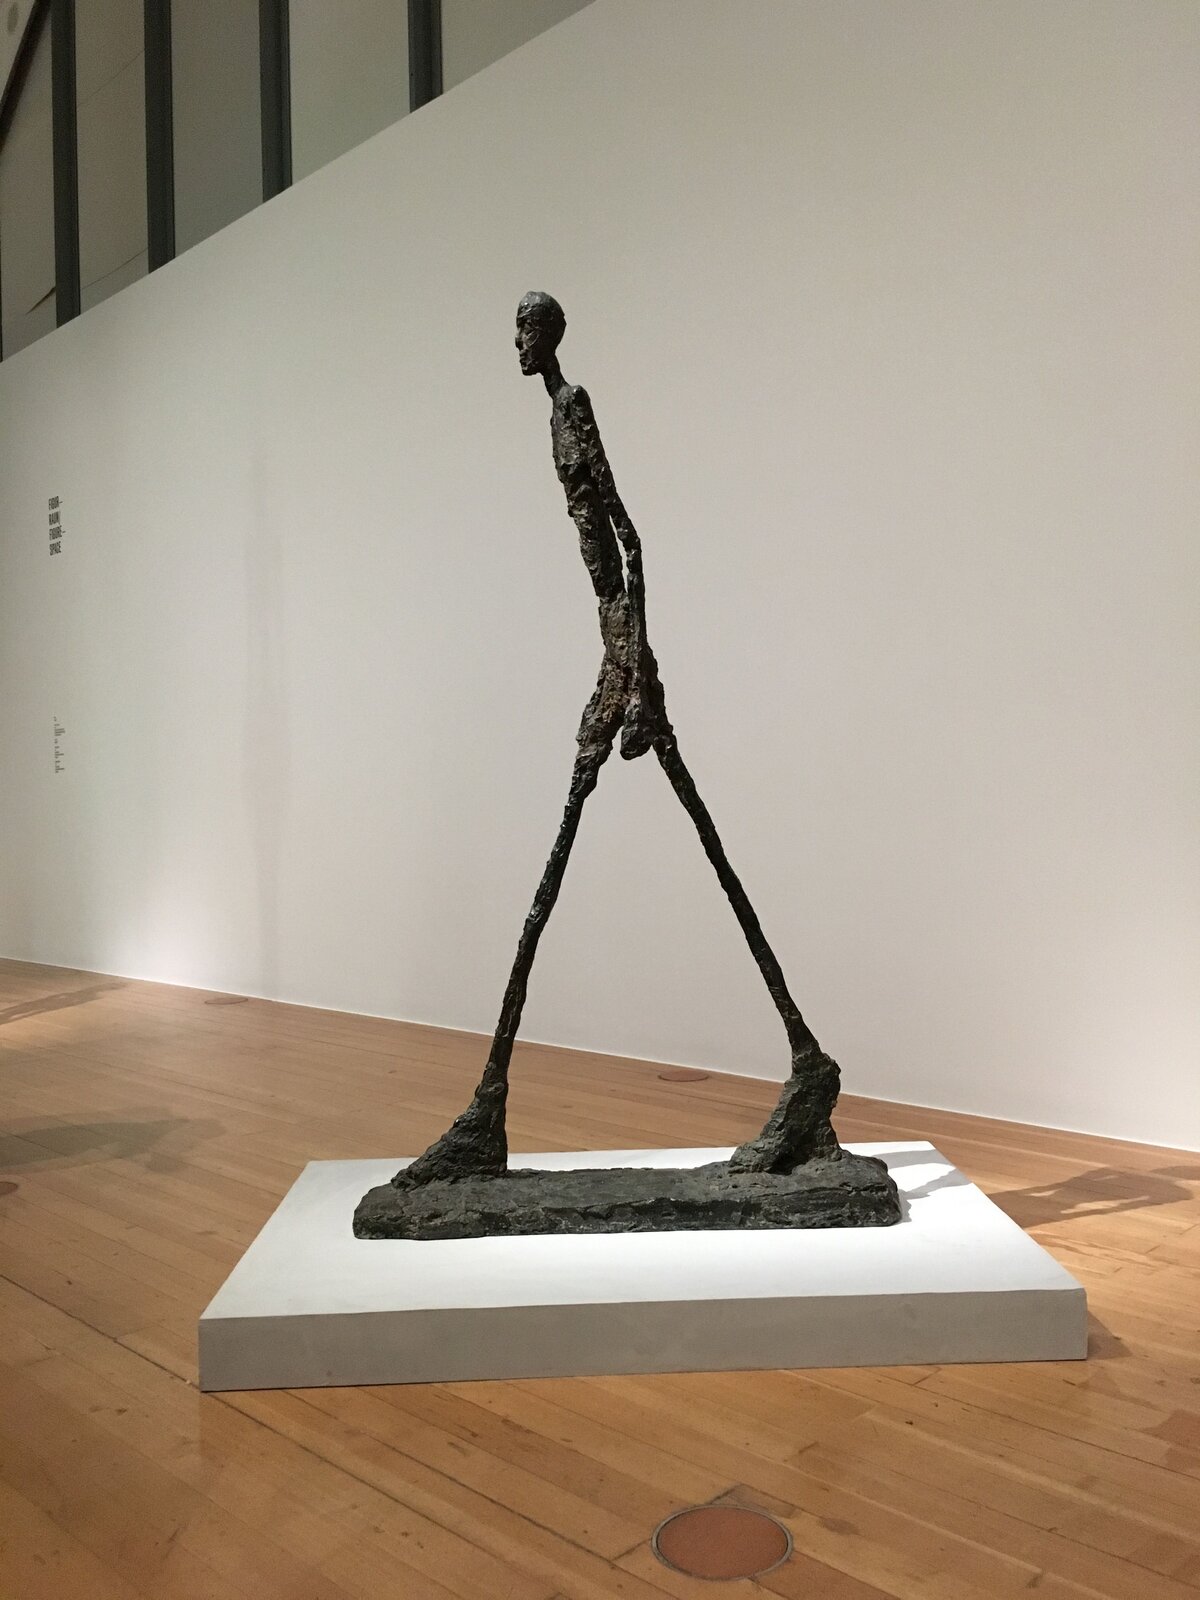 Ilustracja o kształcie pionowego prostokąta przedstawia rzeźbę Alberta Giacomettiego „Idący człowiek”. Przedstawia fotografię rzeźby mężczyzny o konstrukcji szkieletowej, skierowanego w lewą stronę w trakcie ruchu. Nogi postaci są szeroko rozstawione, stopy duże, masywne. Tułów  mężczyzny jest lekko pochylony do przodu, głowa prosto skierowana przed siebie, ręce swobodnie opuszczone. Figura jest pozbawiona proporcji, ustawiona została we wnętrzu na drewnianej podłodze. W tle widoczny jest fragment ściany i balustrady schodów. 